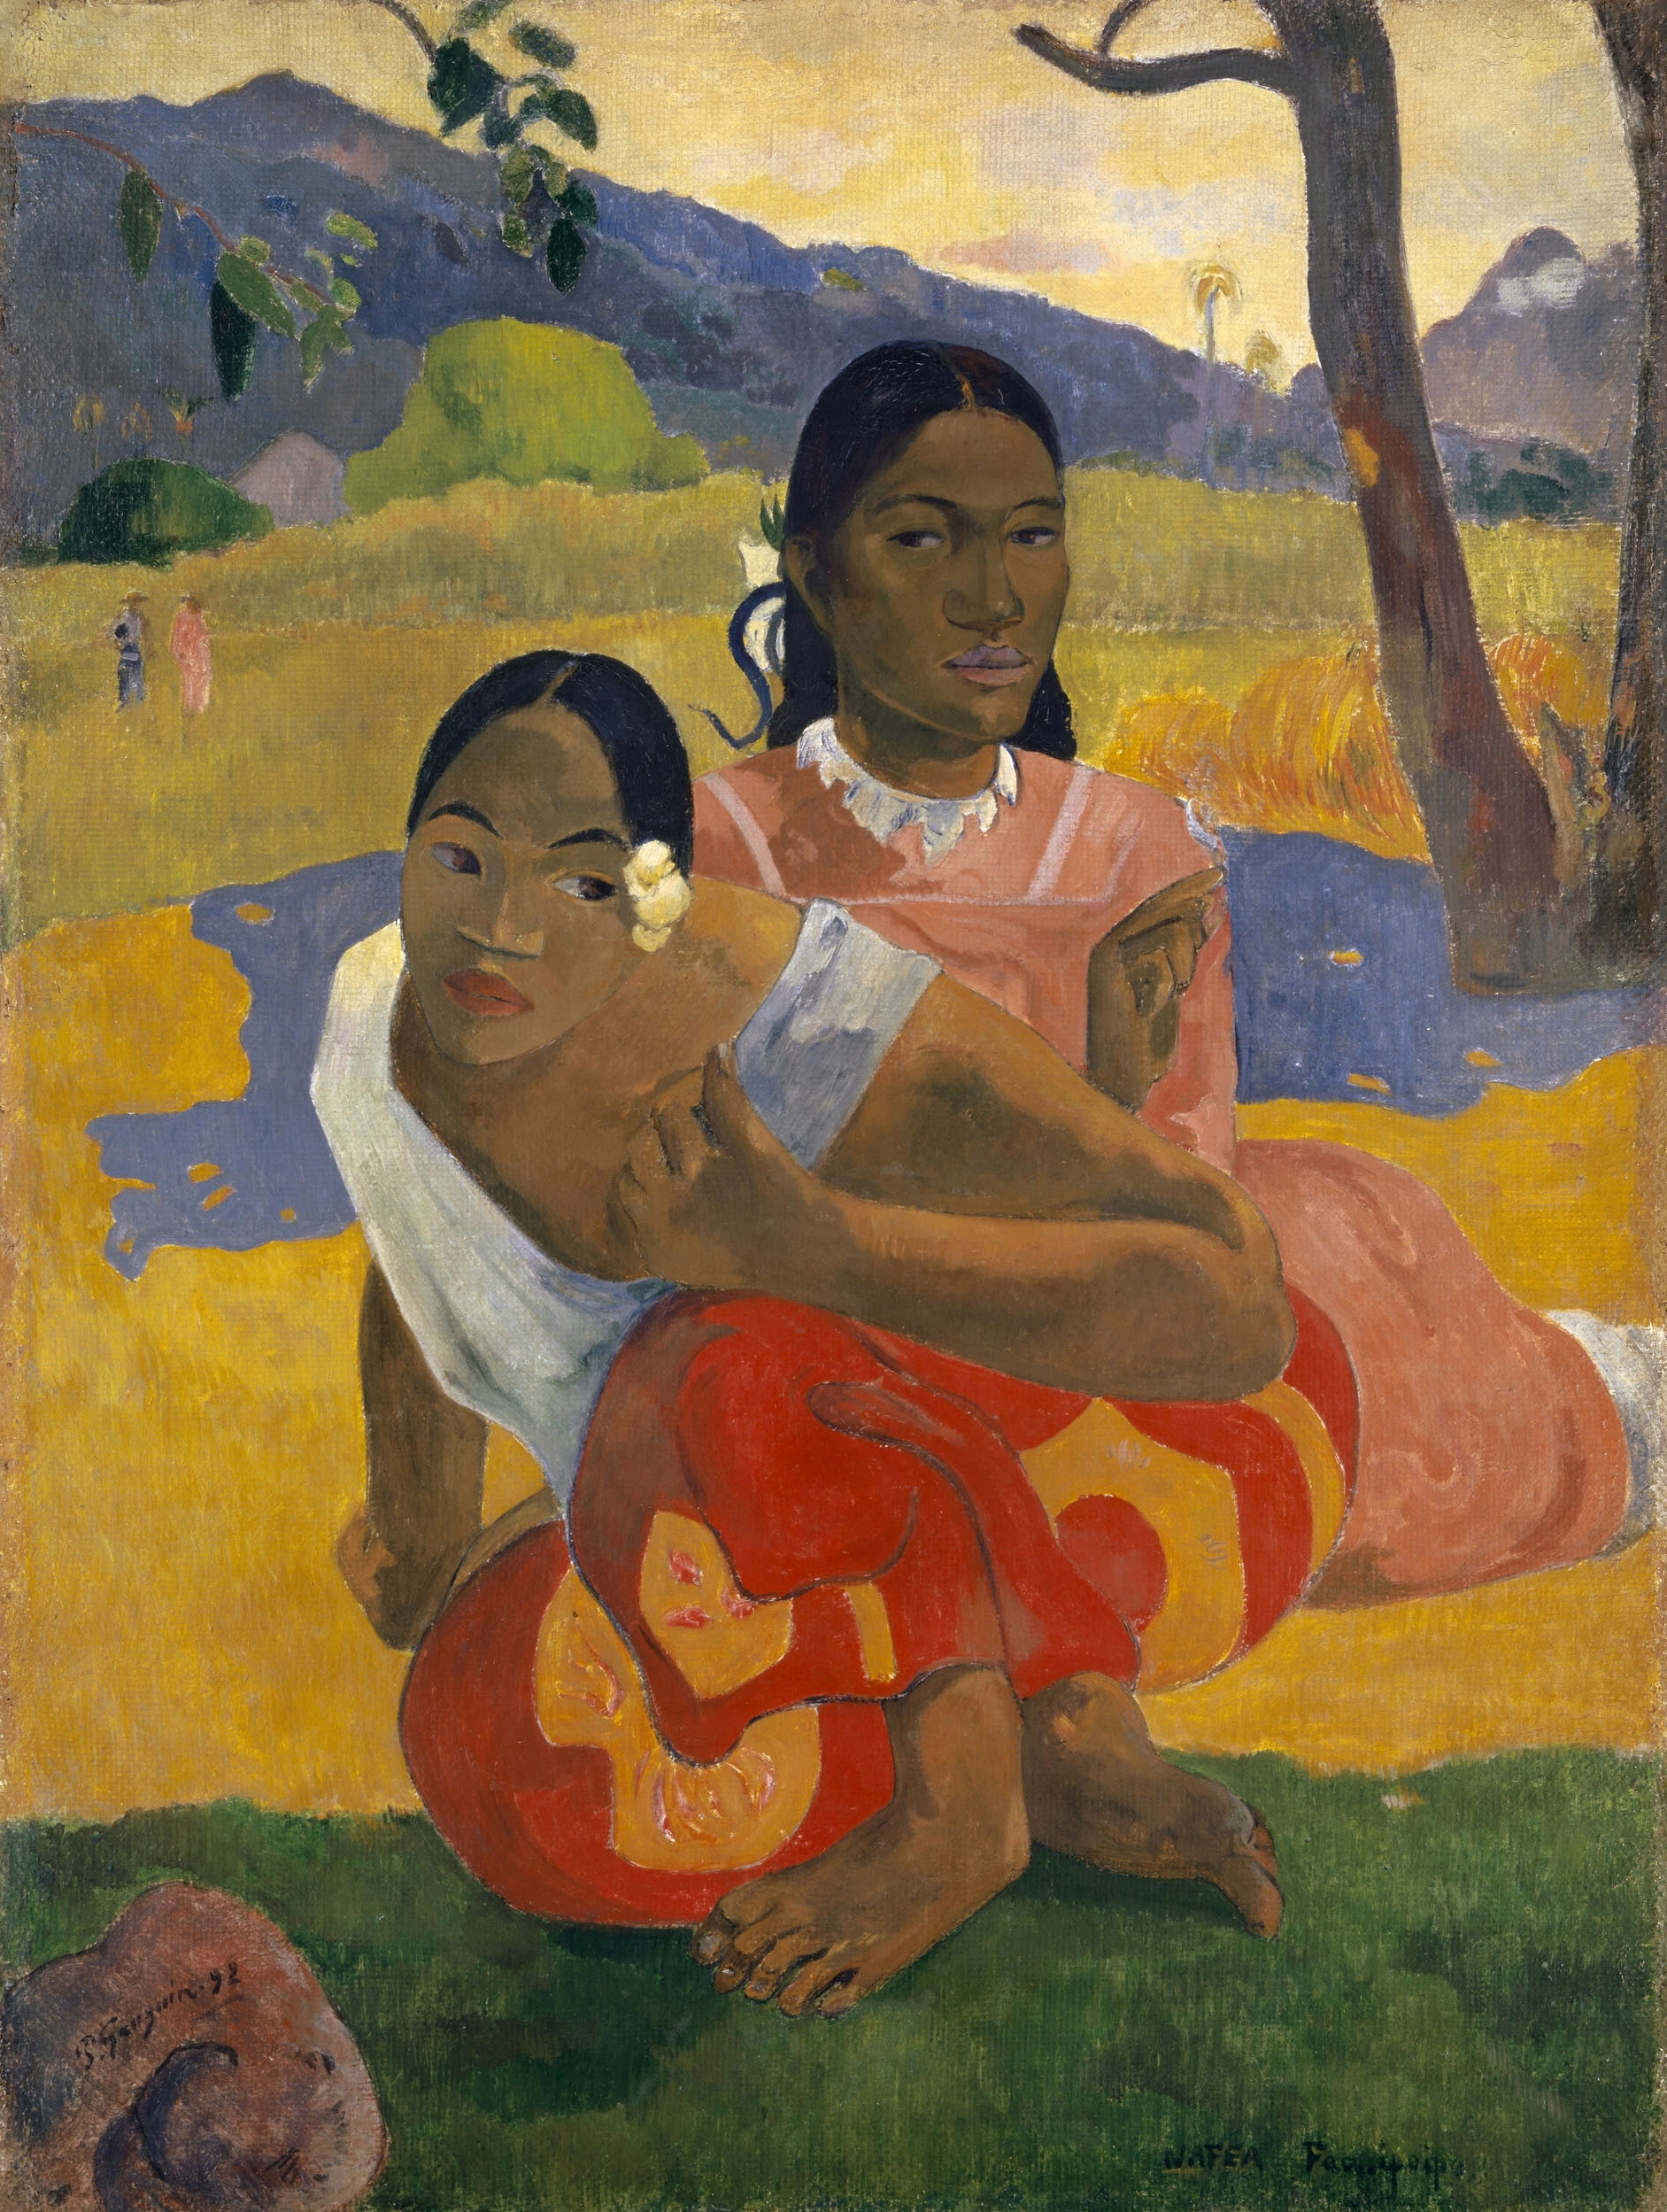 Ne Zaman Evleneceksin? by Paul Gauguin - 1892 - 101 x 77 cm özel koleksiyon